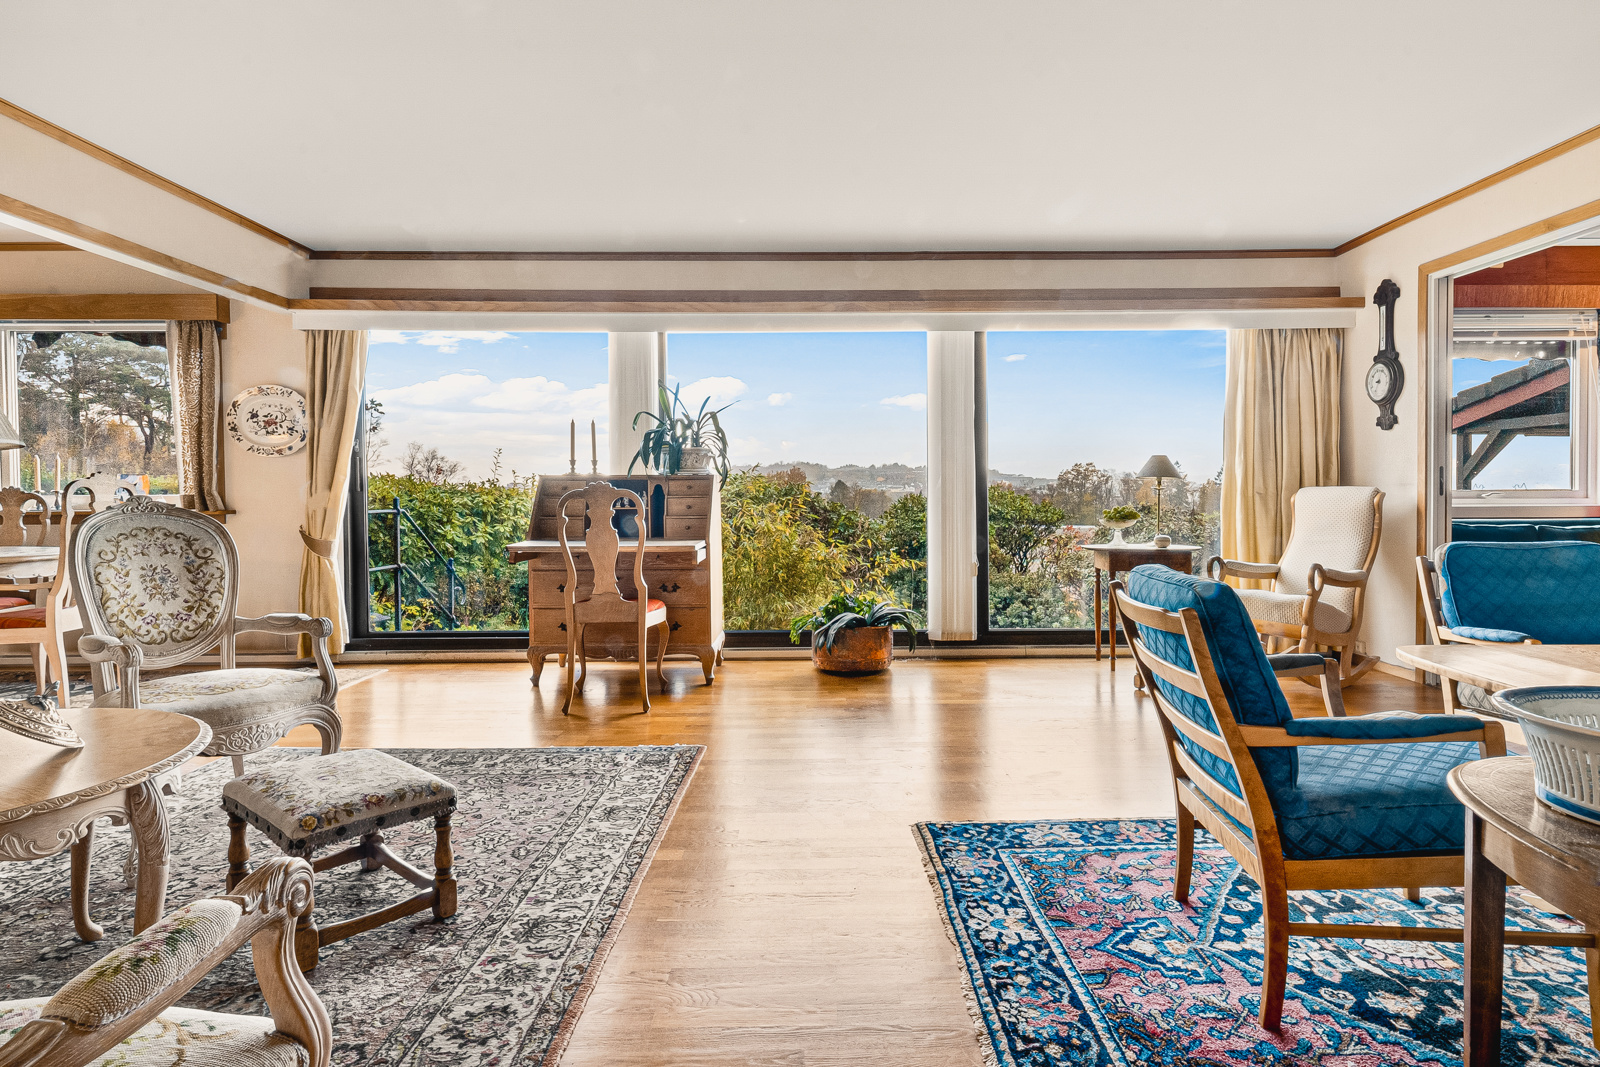 Velkommen til denne flotte leiligheten i Skjoldhøgda 67 - her presentert av Tommy Randles for Fana Sparebank Eiendom